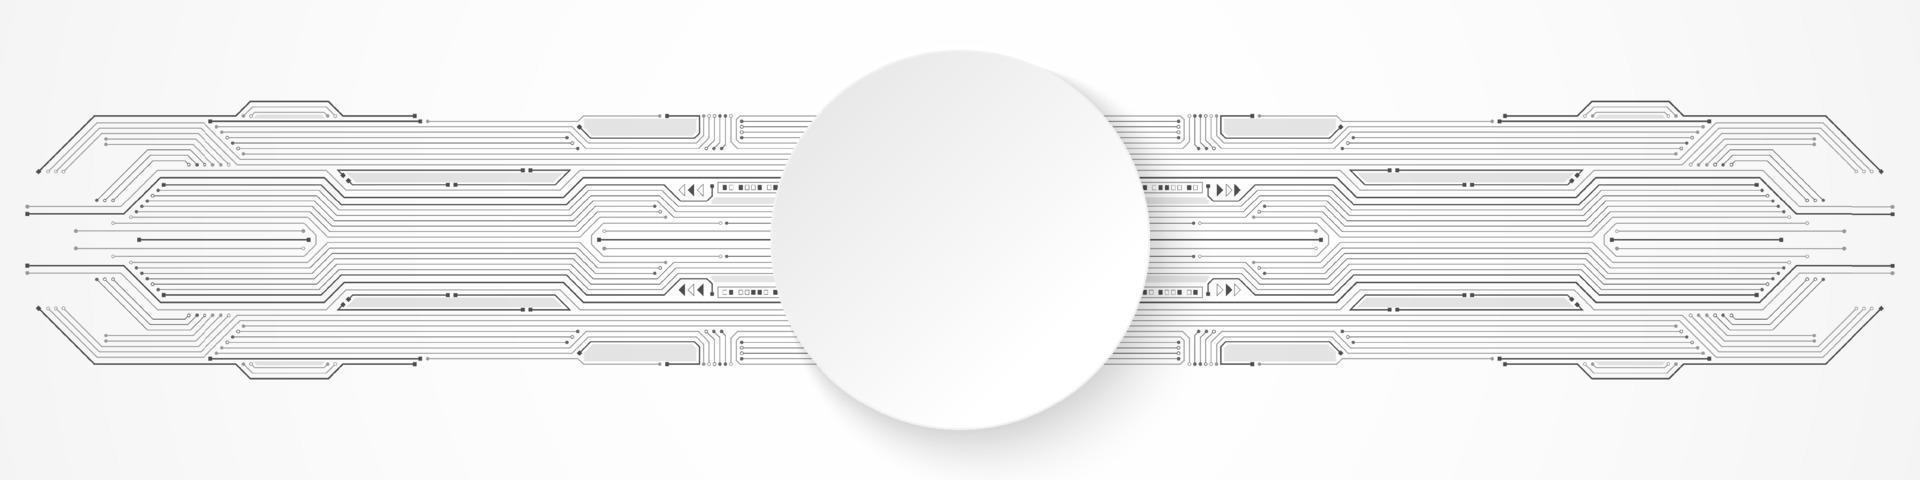 fond de technologie abstraite, bannière de cercle blanc sur le modèle de carte de circuit imprimé vecteur